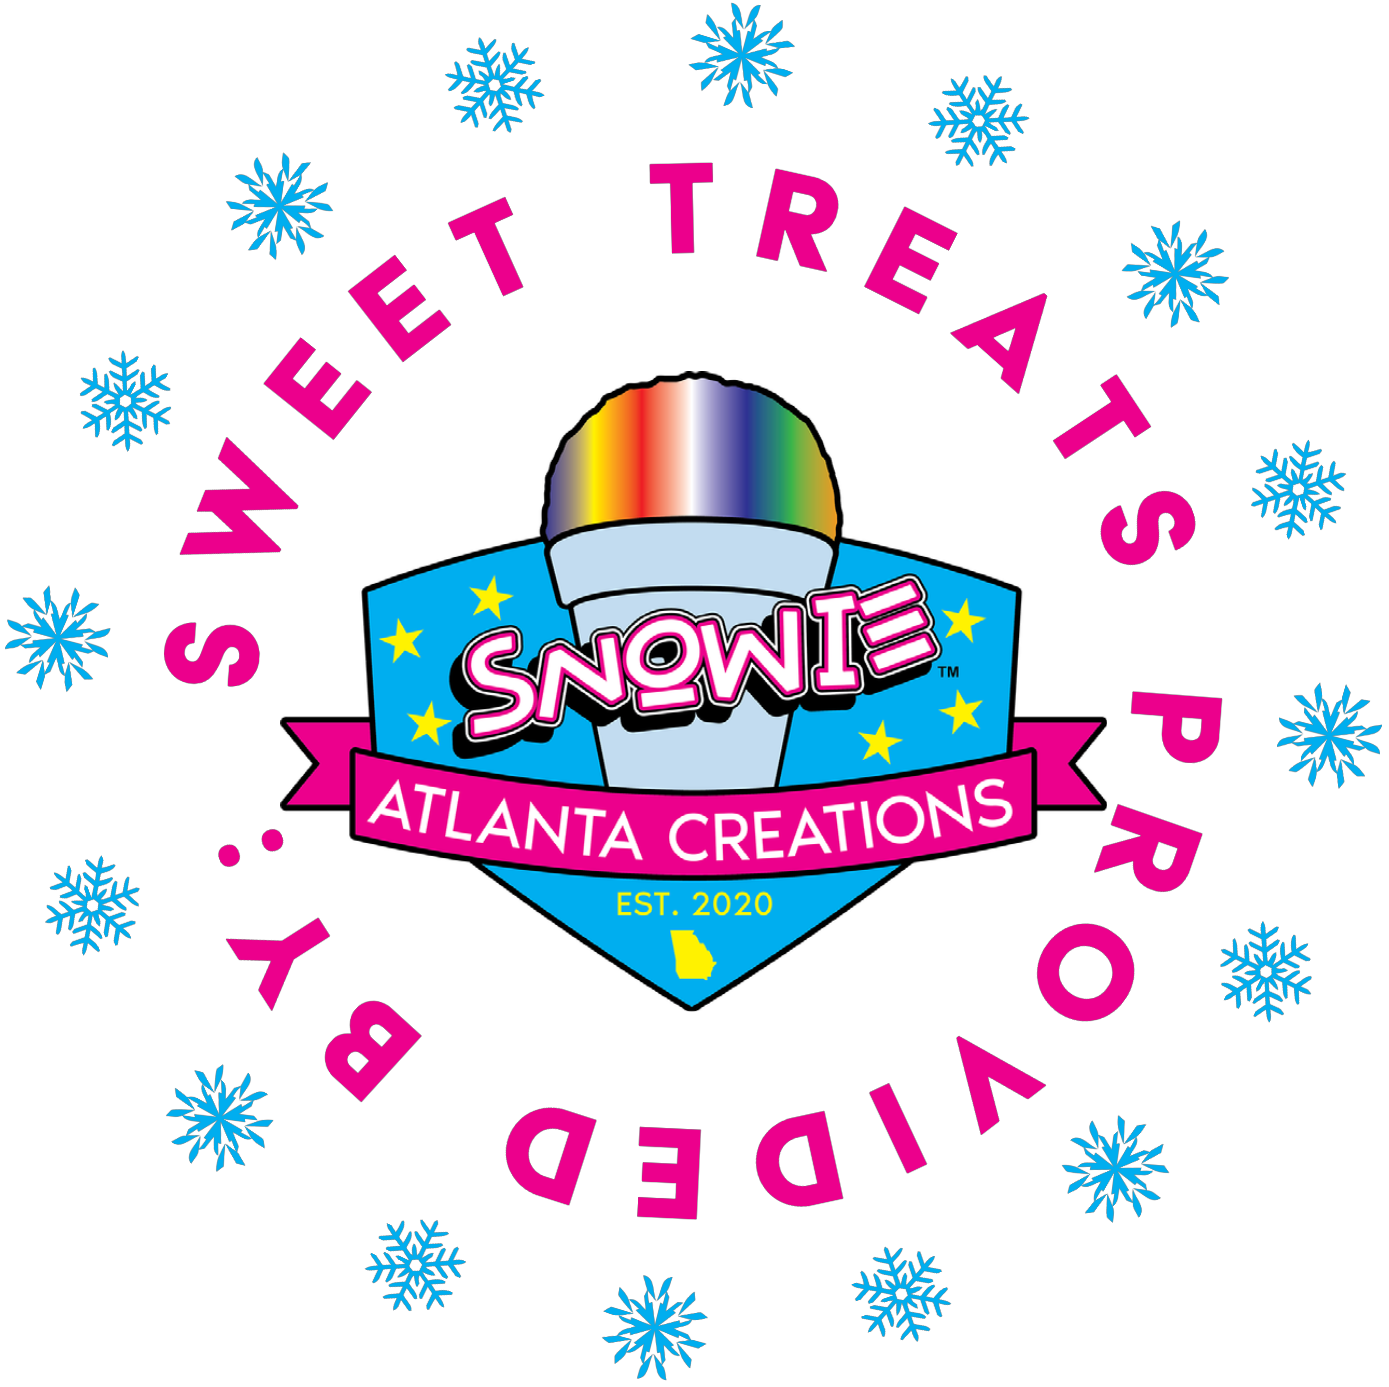 Snowie Atlanta Creations